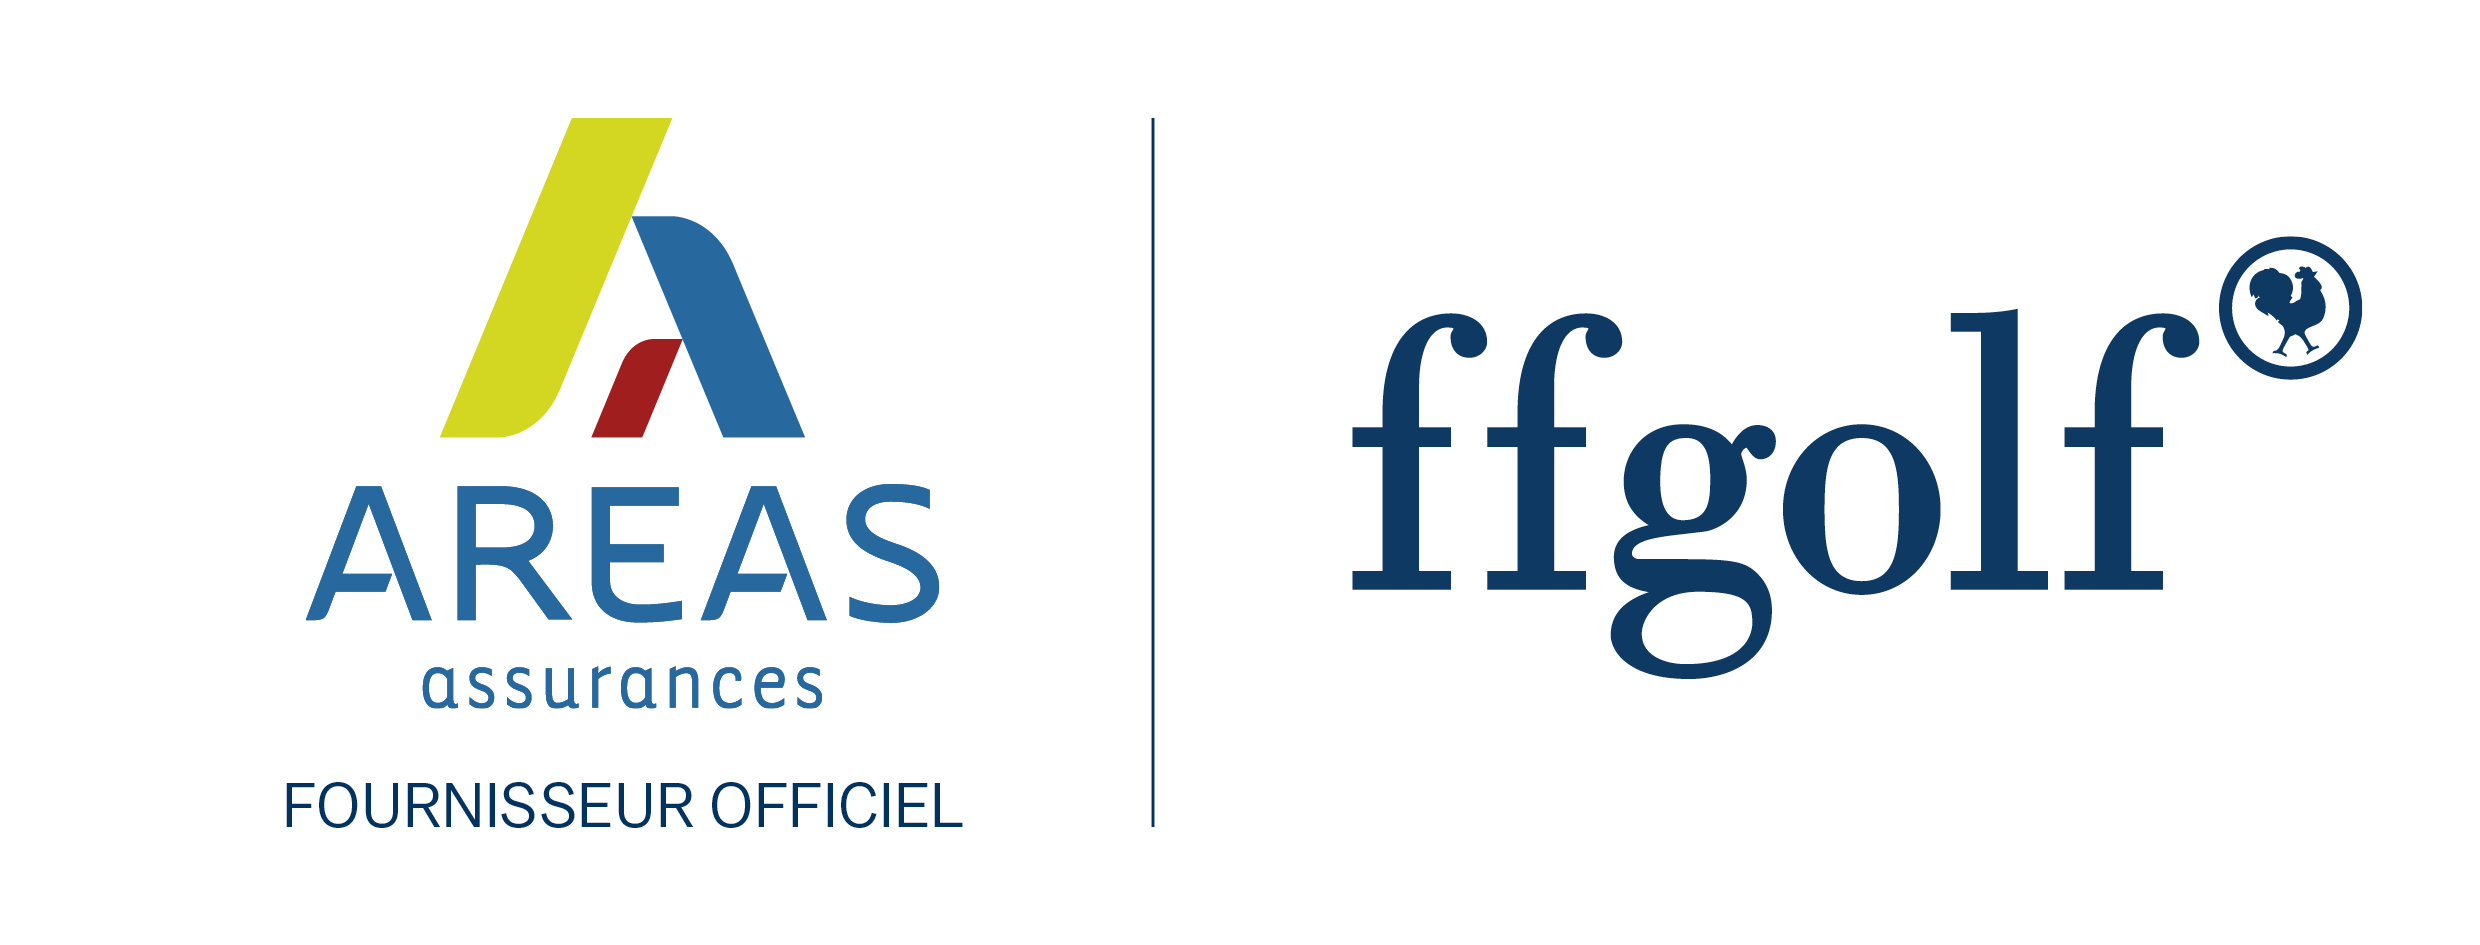 Partenariat Aréas - ffgolf